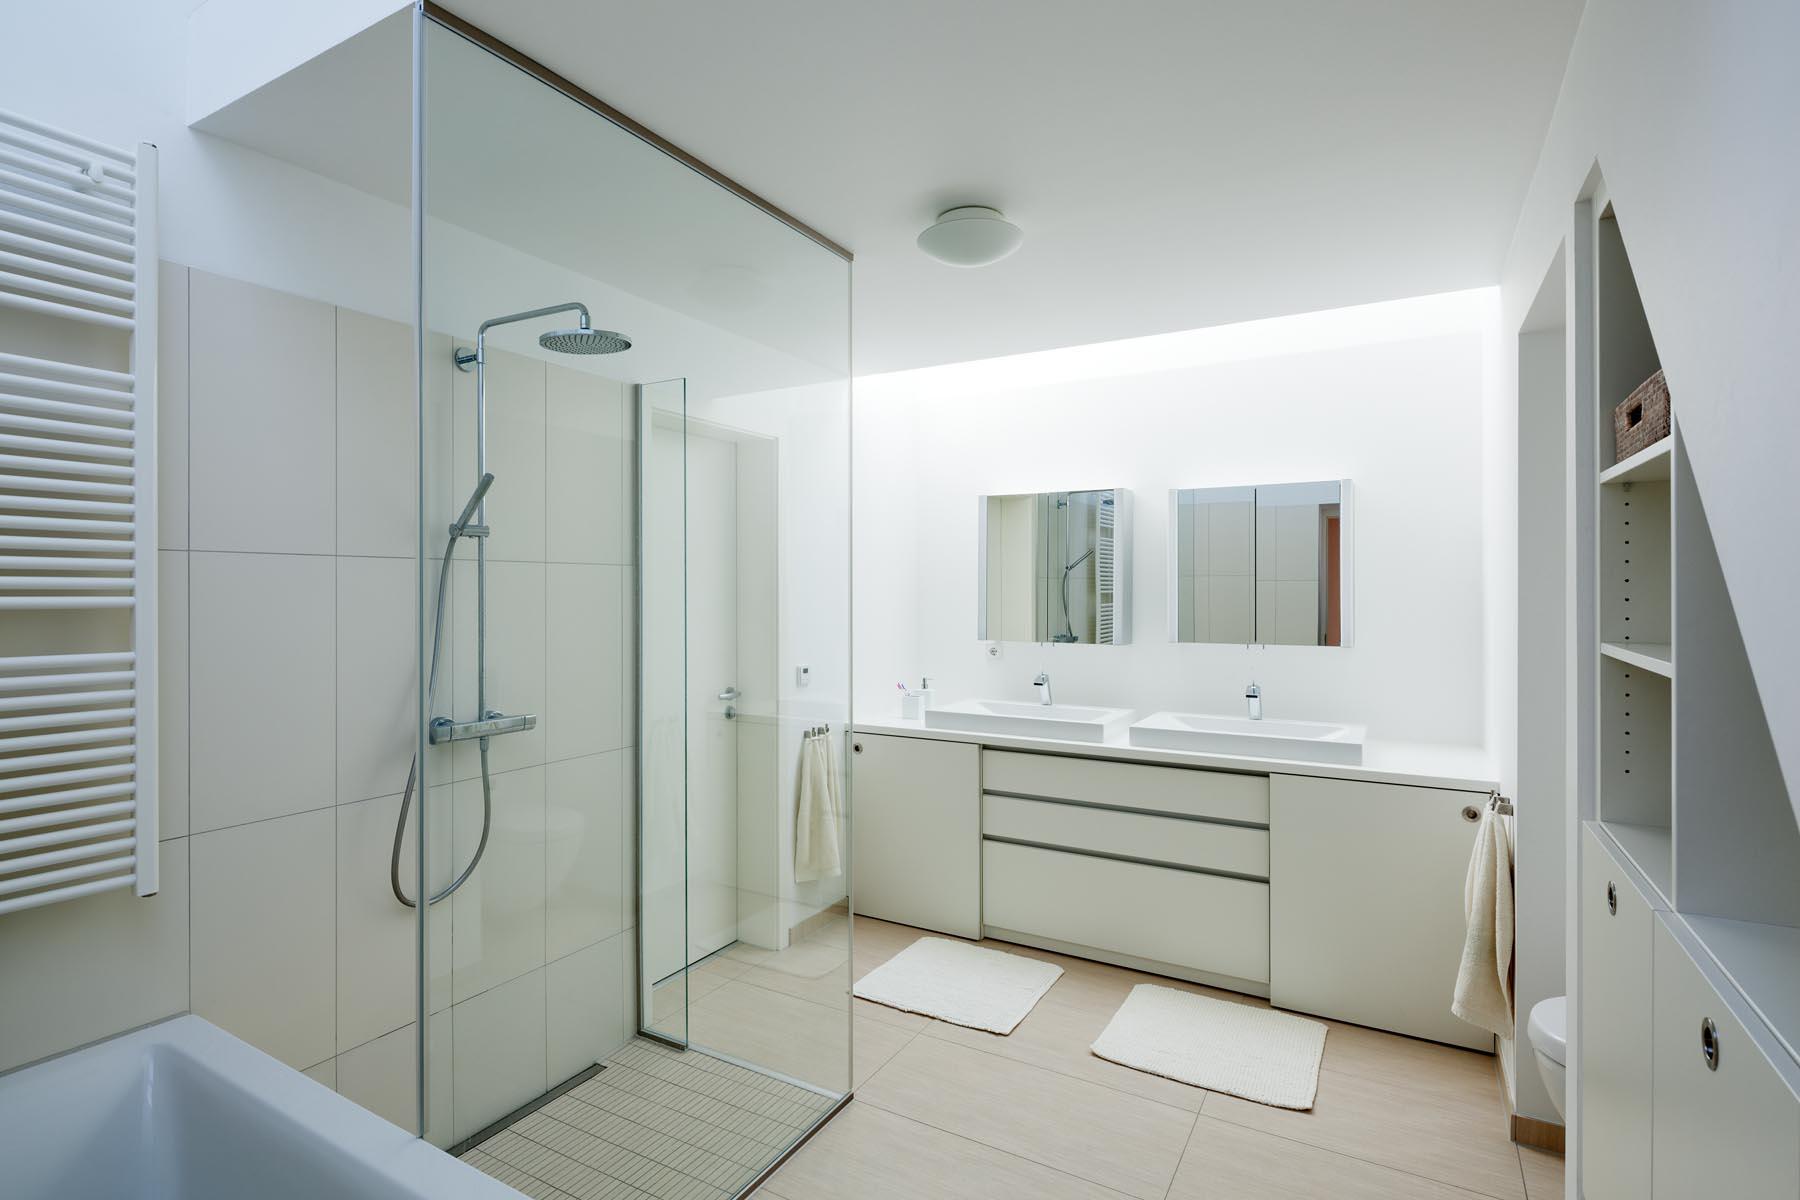 Wohnhaus mit Praxis #dusche #badmöbel #waschbecken ©Thomas Ott